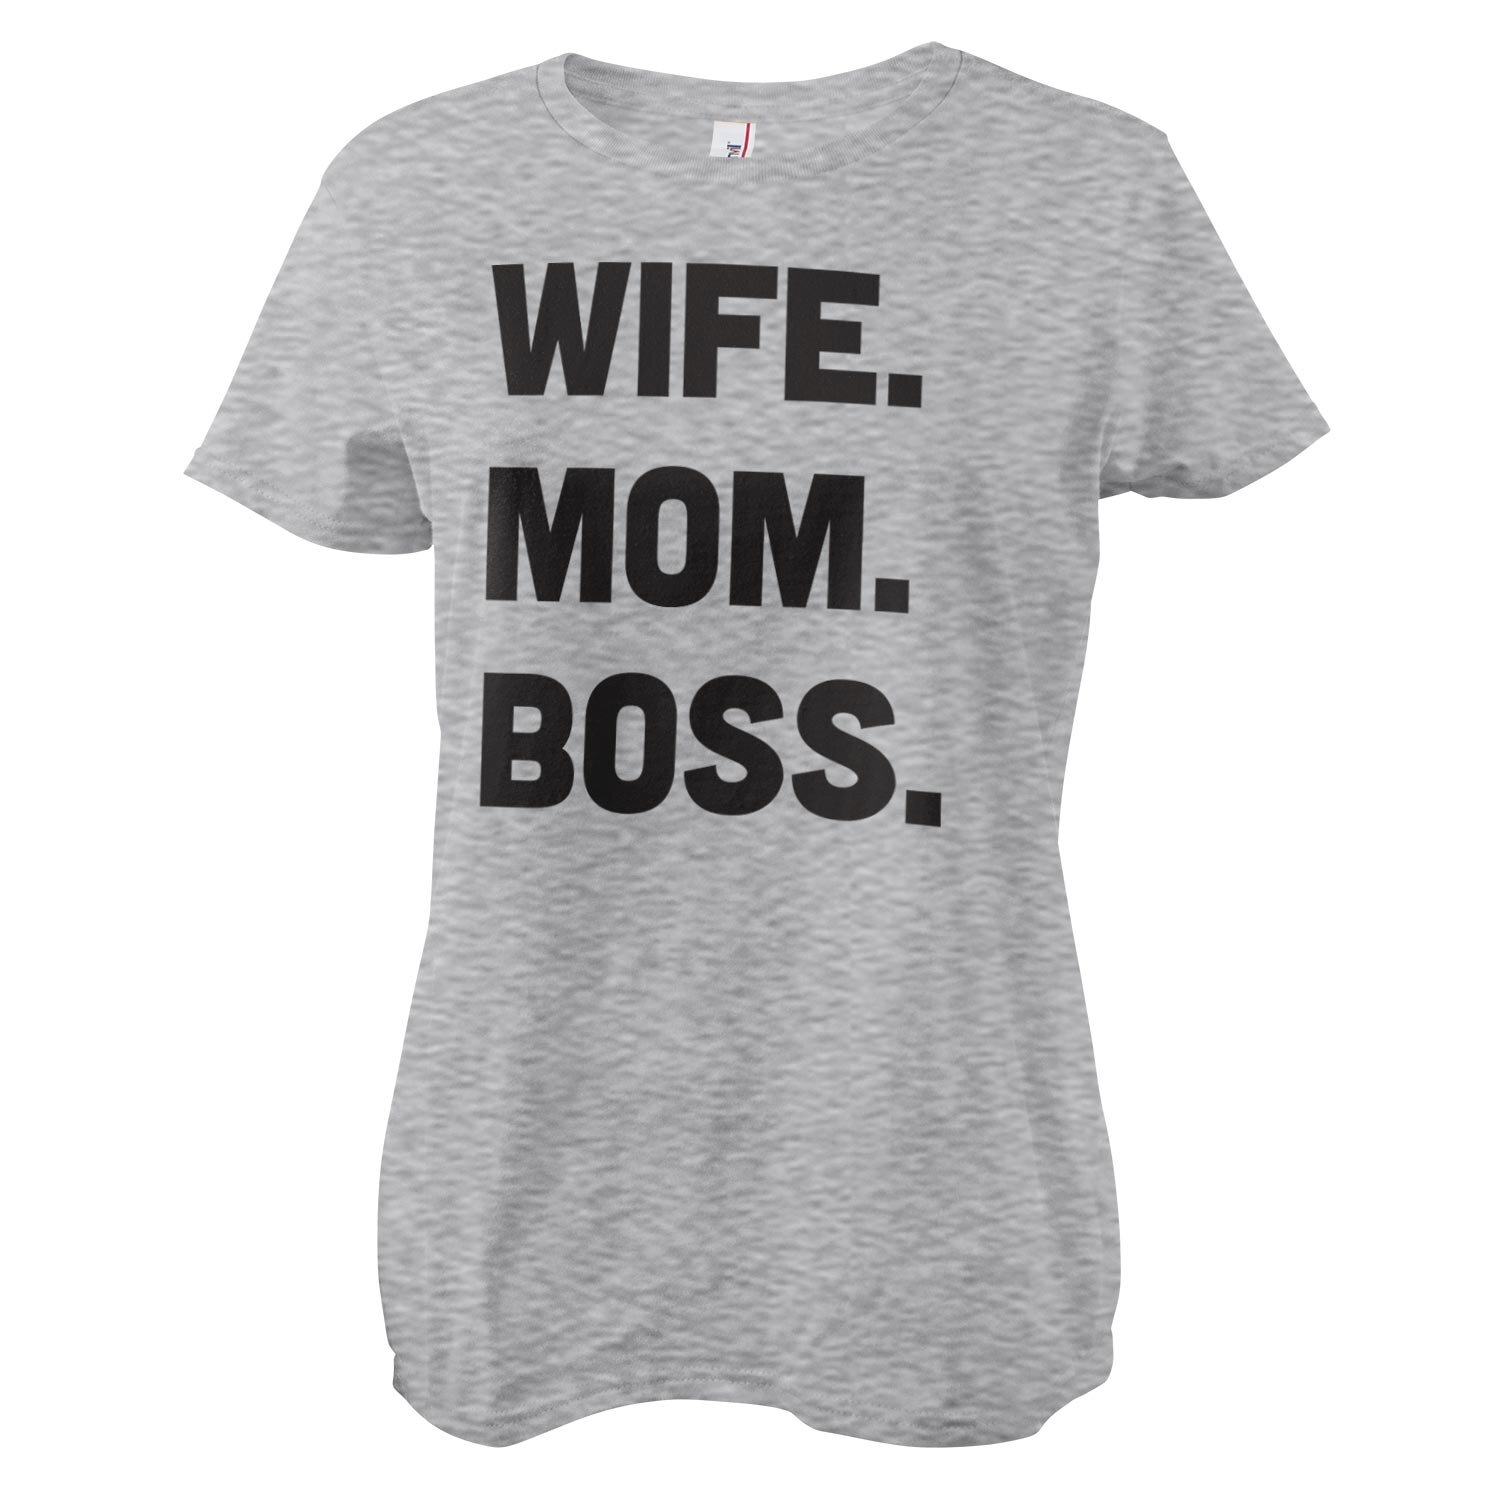 Wife - Mom - Boss Girly Tee